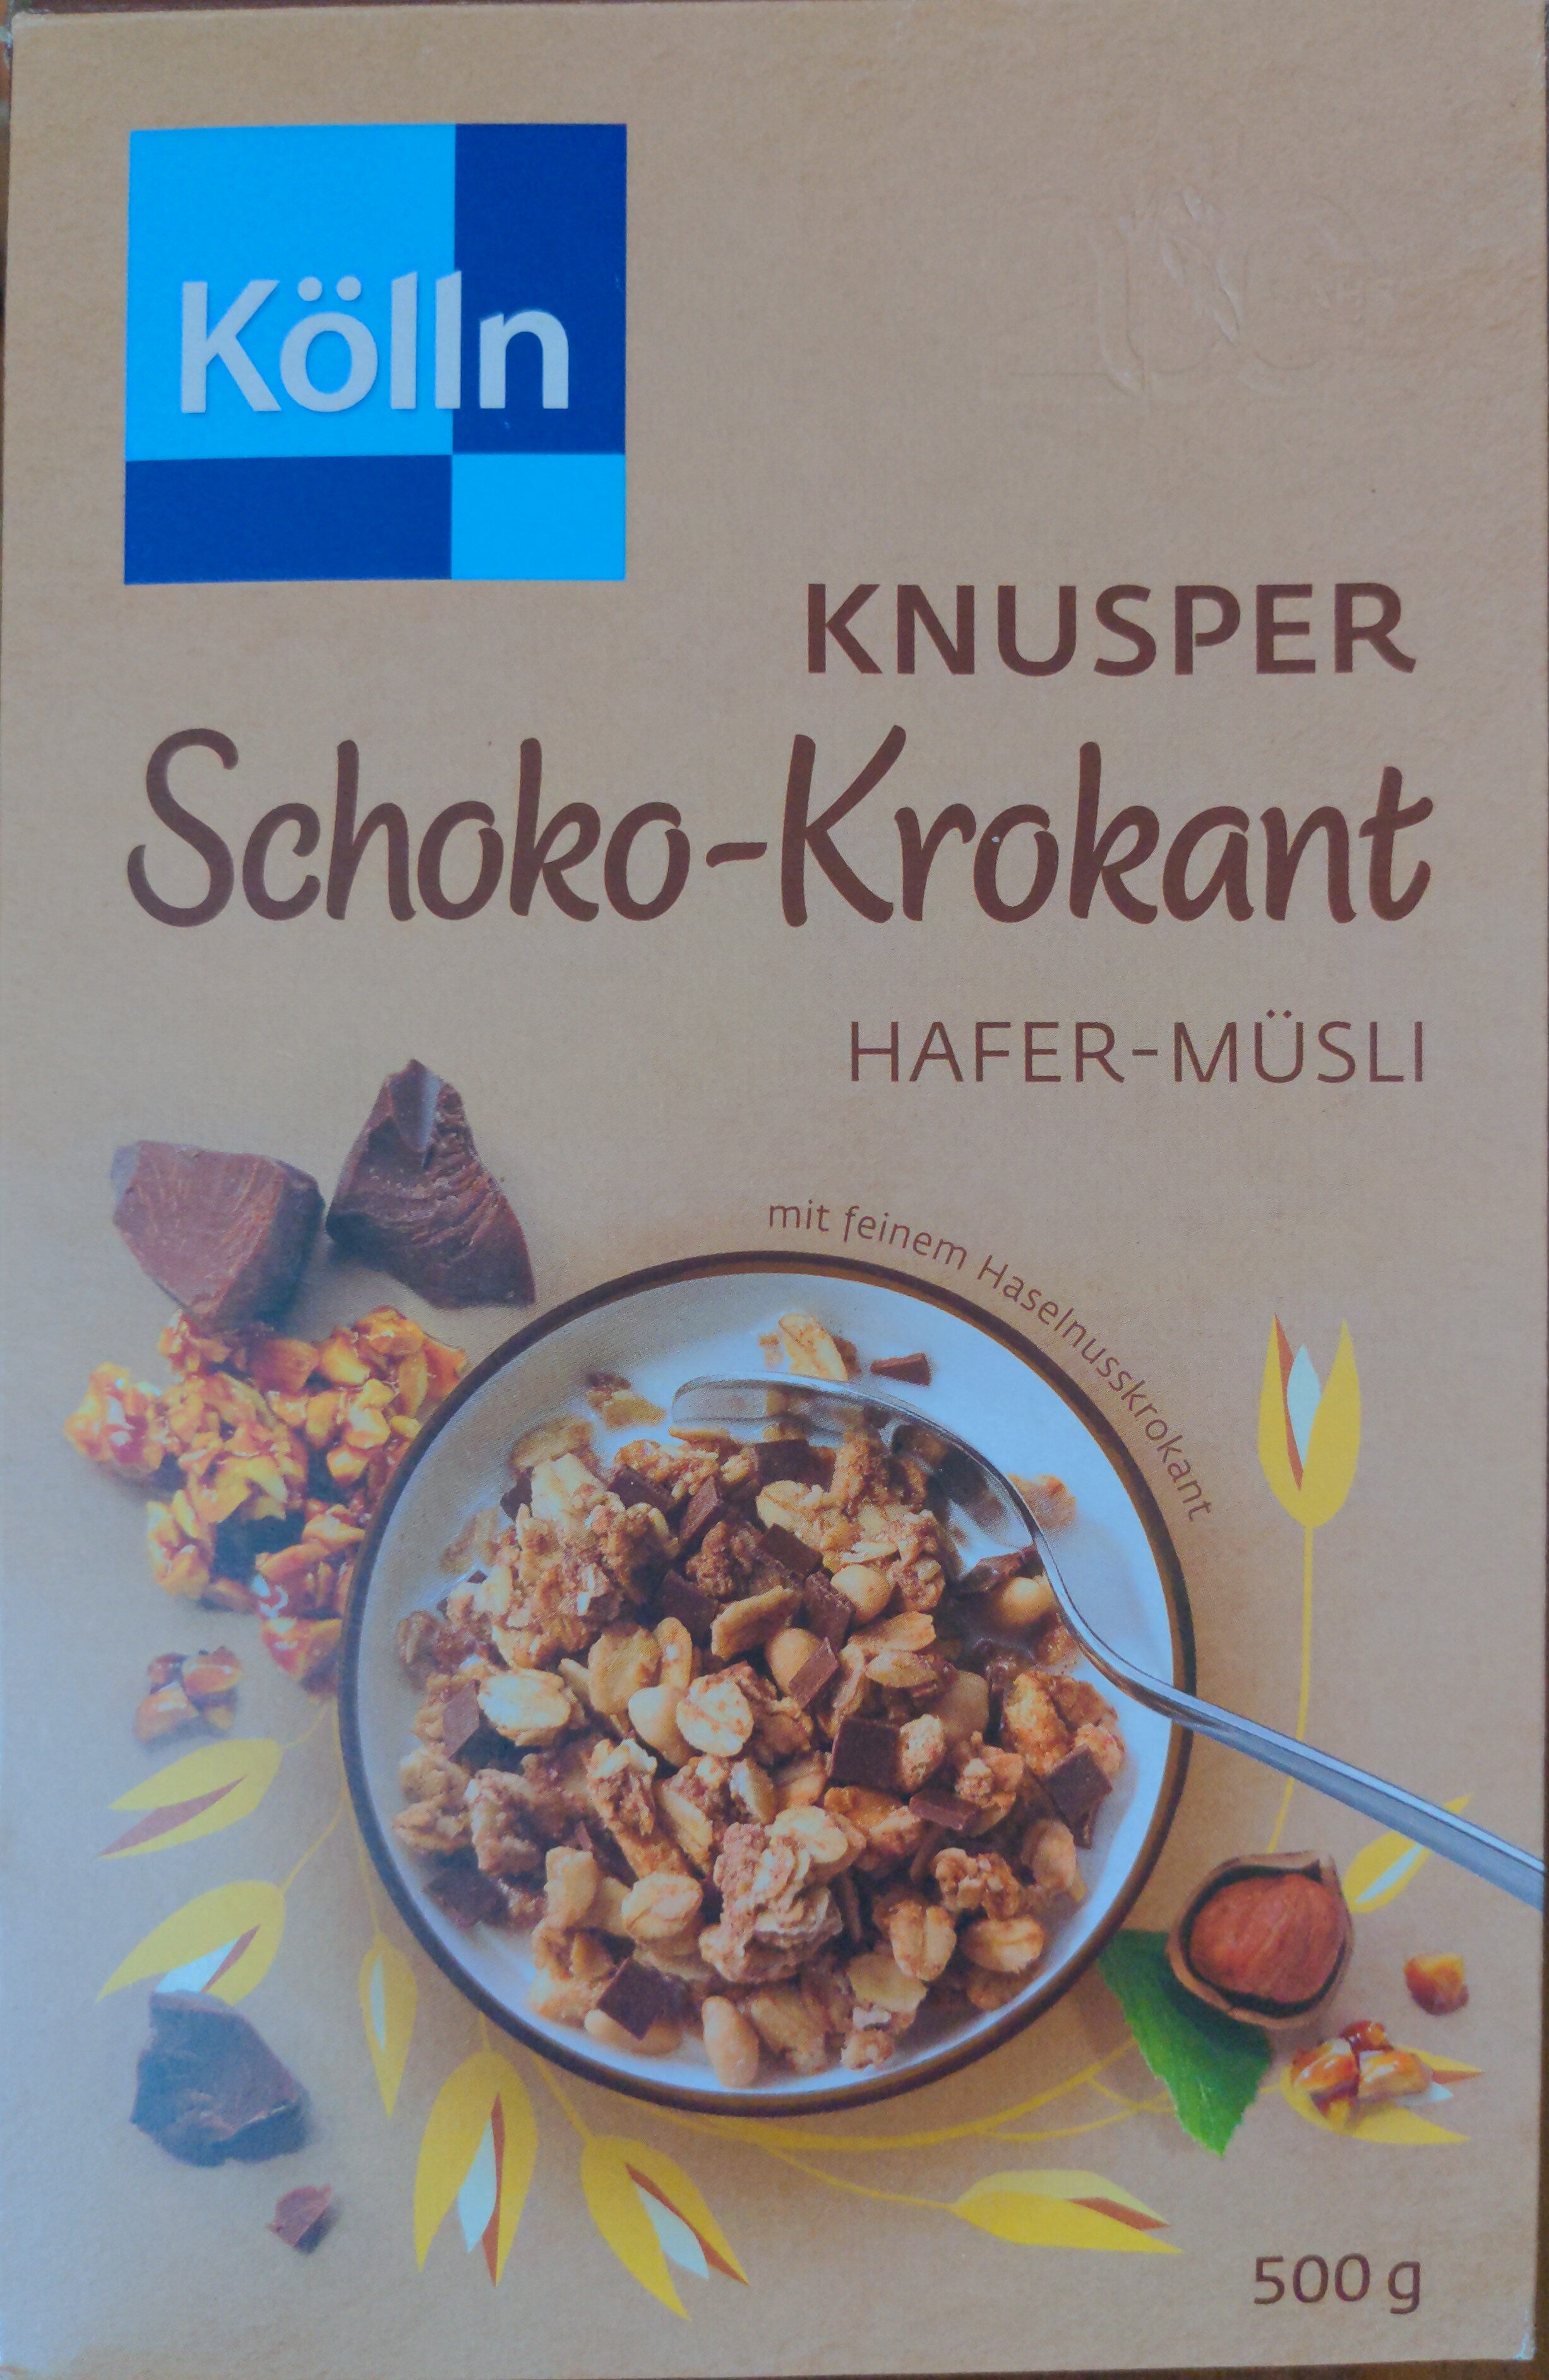 Knusper Schoko-Krokant - Prodotto - de